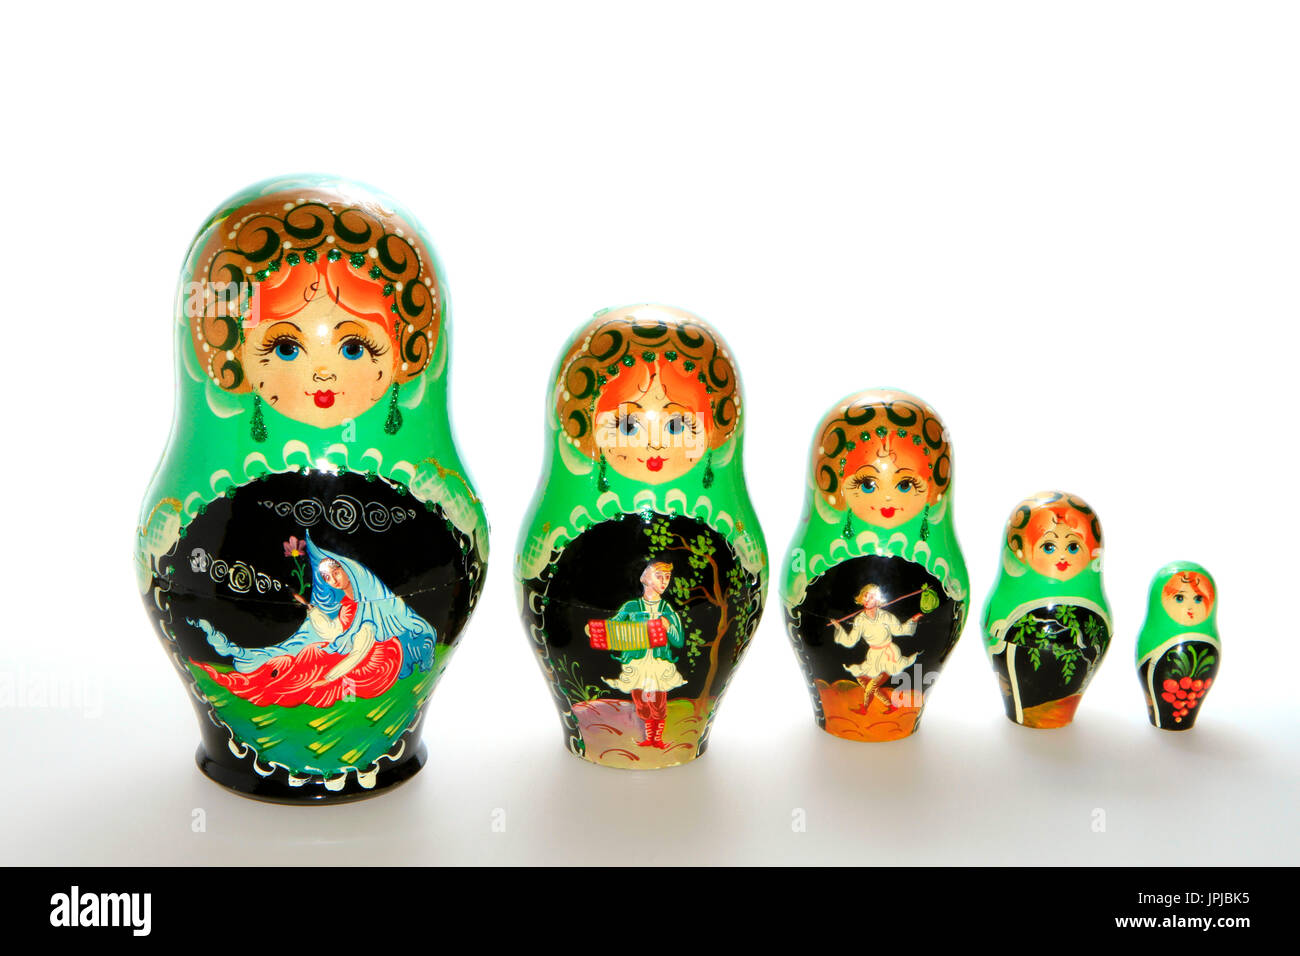 Russische Matroschka Puppen, typisches Souvenir aus Russland  Stockfotografie - Alamy